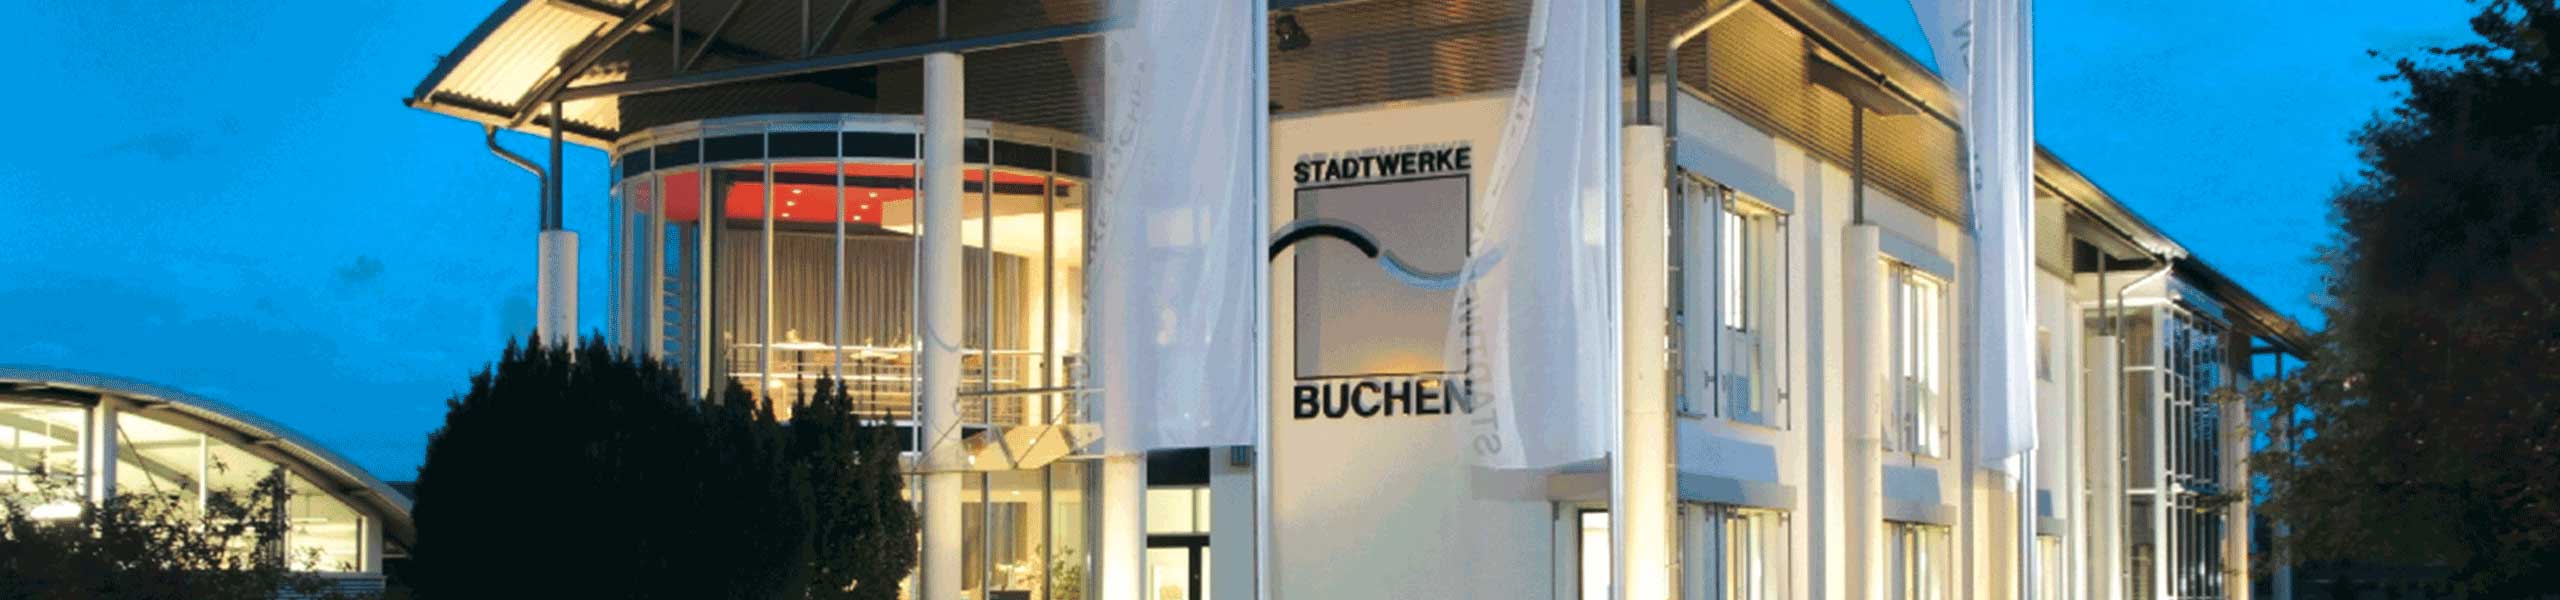 Stadtwerke Buchen GmbH & Co KG - Ihr Versorger vor Ort - Störungsmeldungen